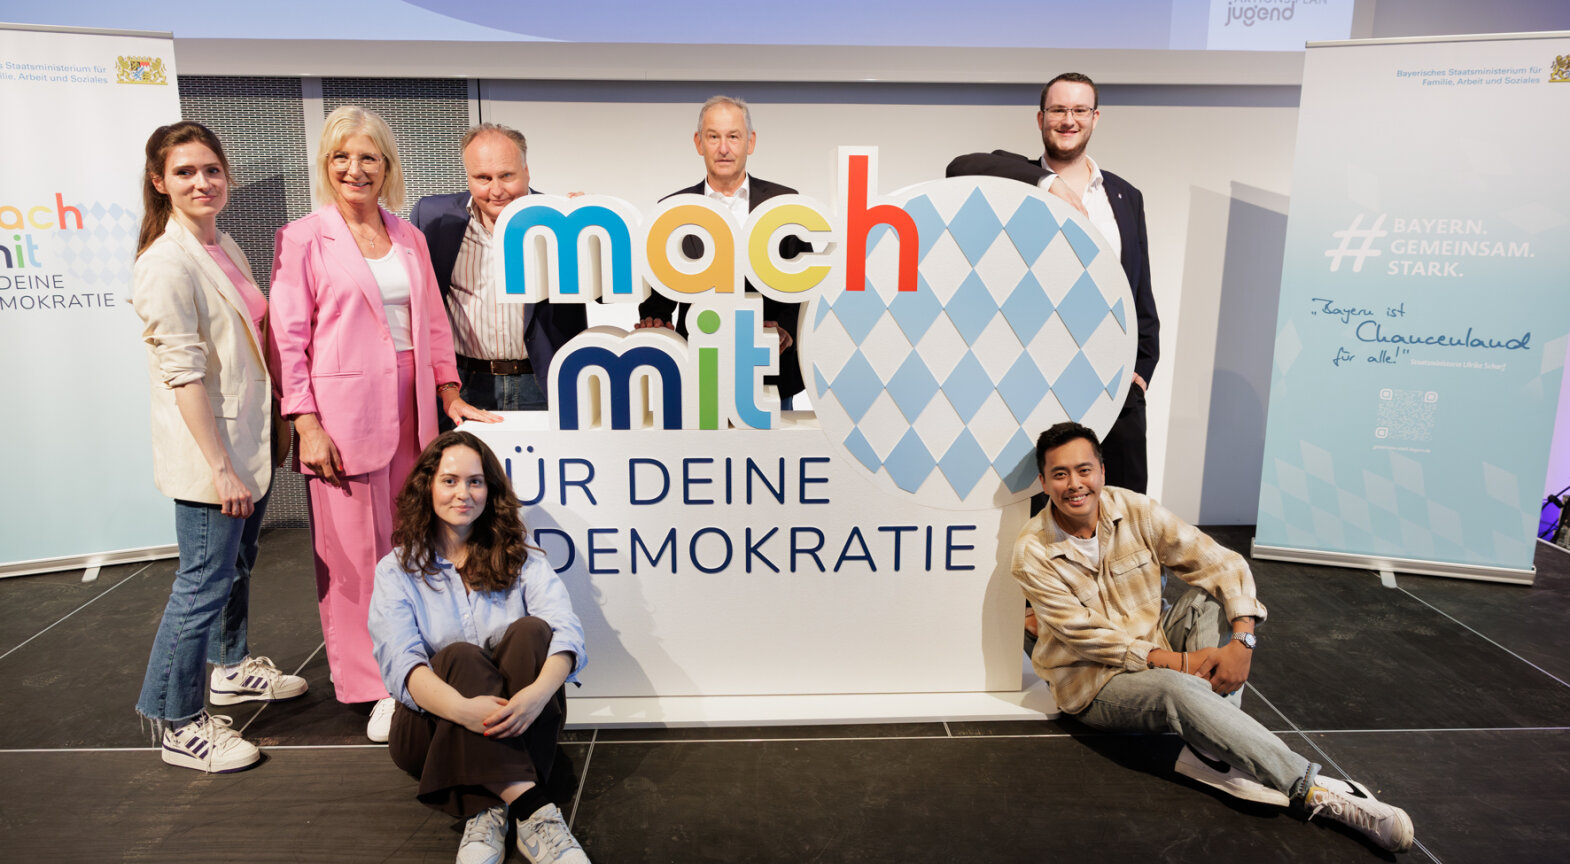 Bayerns Jugendministerin Ulrike Scharf zusammen mit den Teilnehmerinnen und Teilnehmern des Podiumsgesprächs sowie der Moderatorin